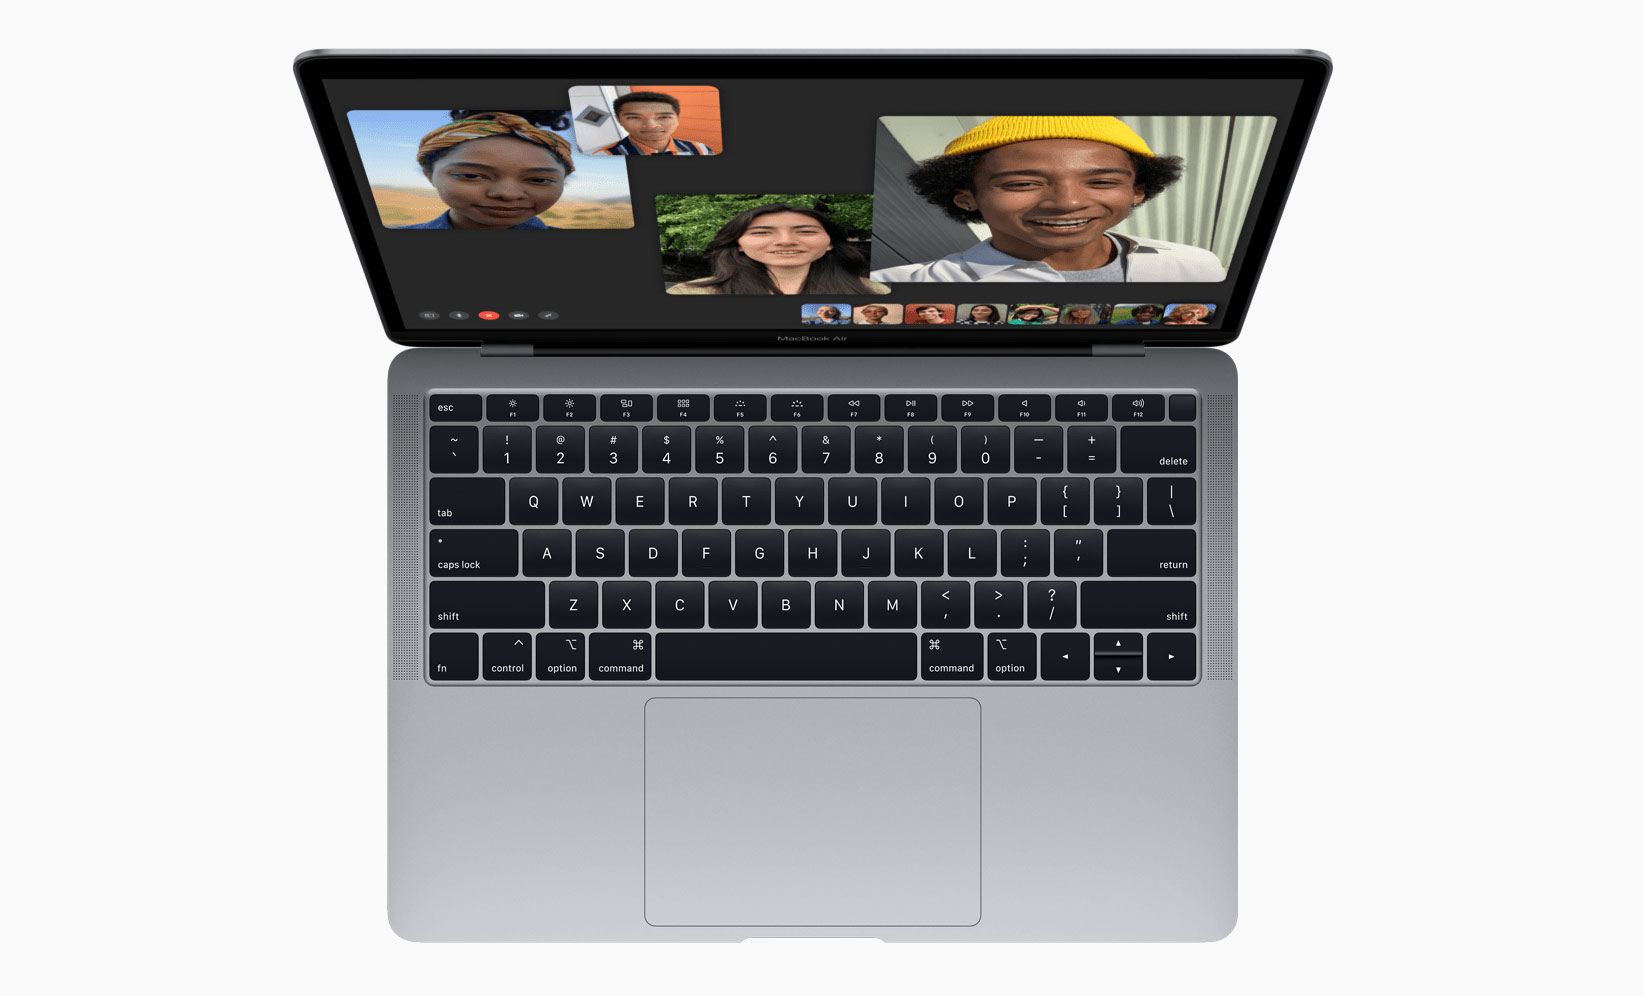 2019 款 MacBook Air 固态硬盘速度比上代慢 35%